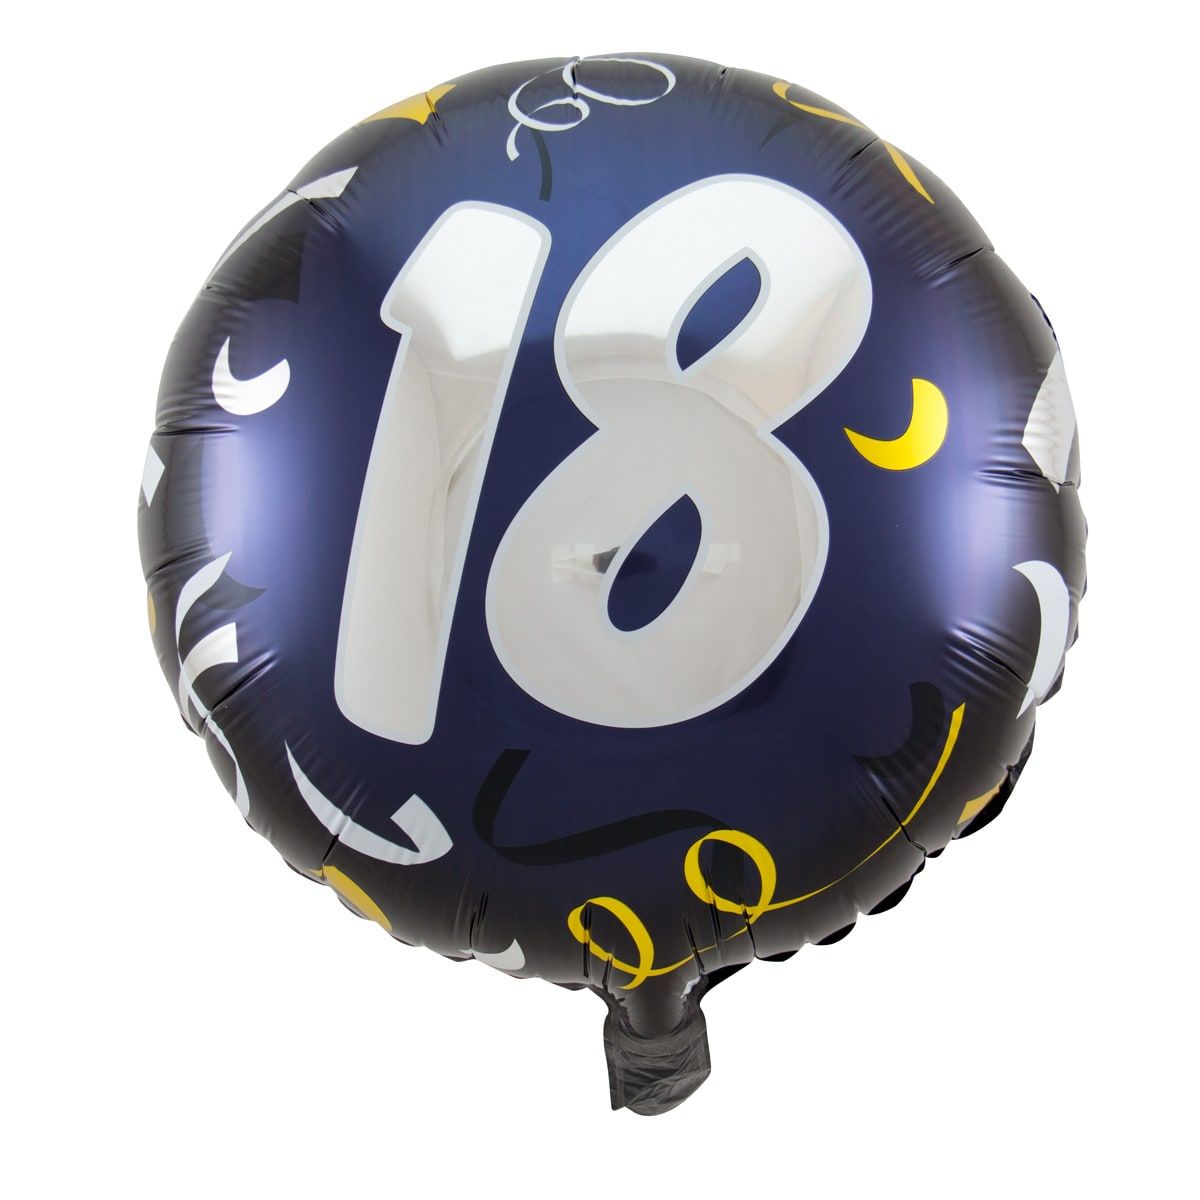 Folieballon 18 jaar stijlvol blauw